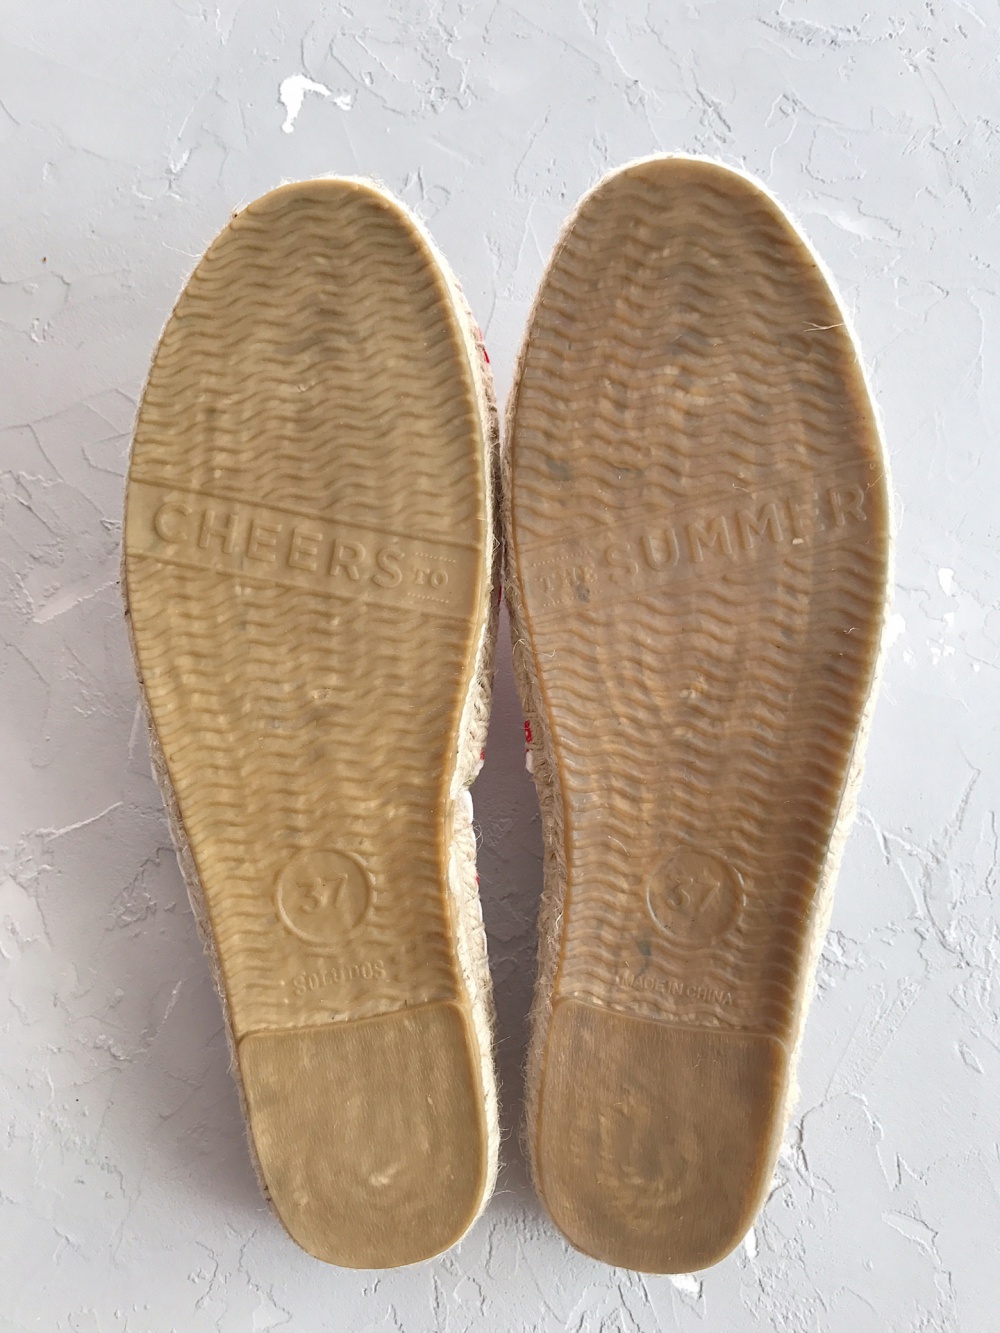 Женская обувь, новые оригинальные эспадрильи Soludos, размер 37